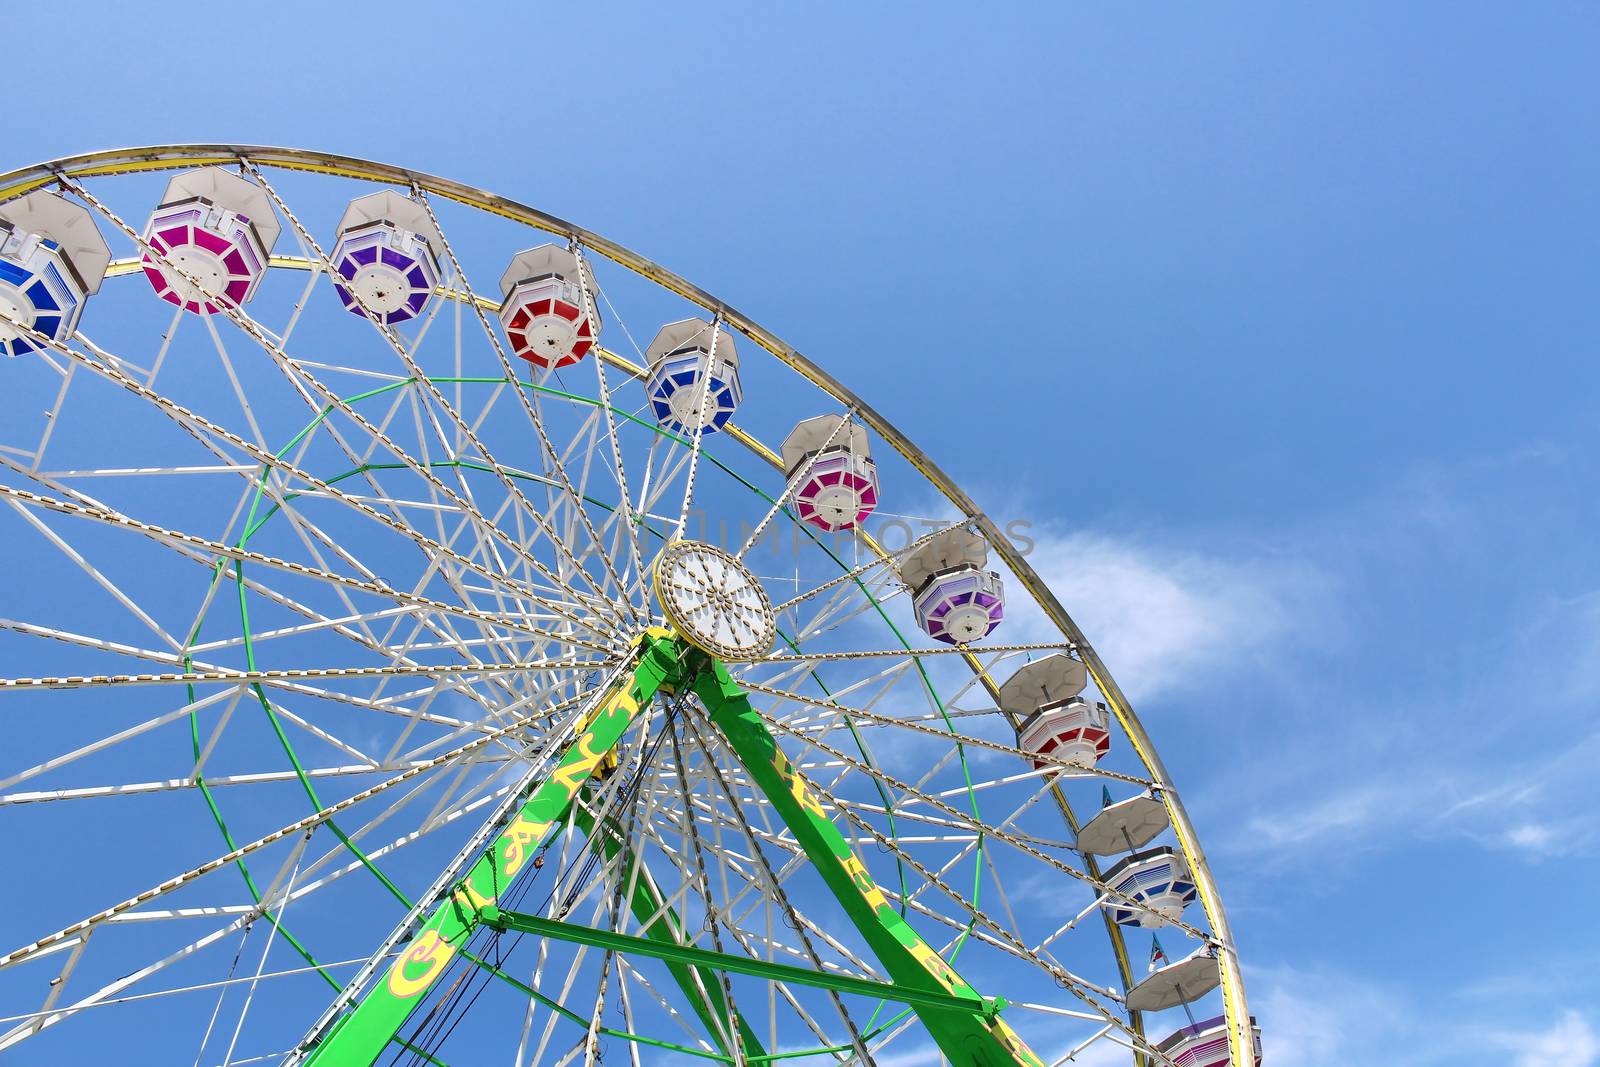 Ferris Wheel at the State Fair